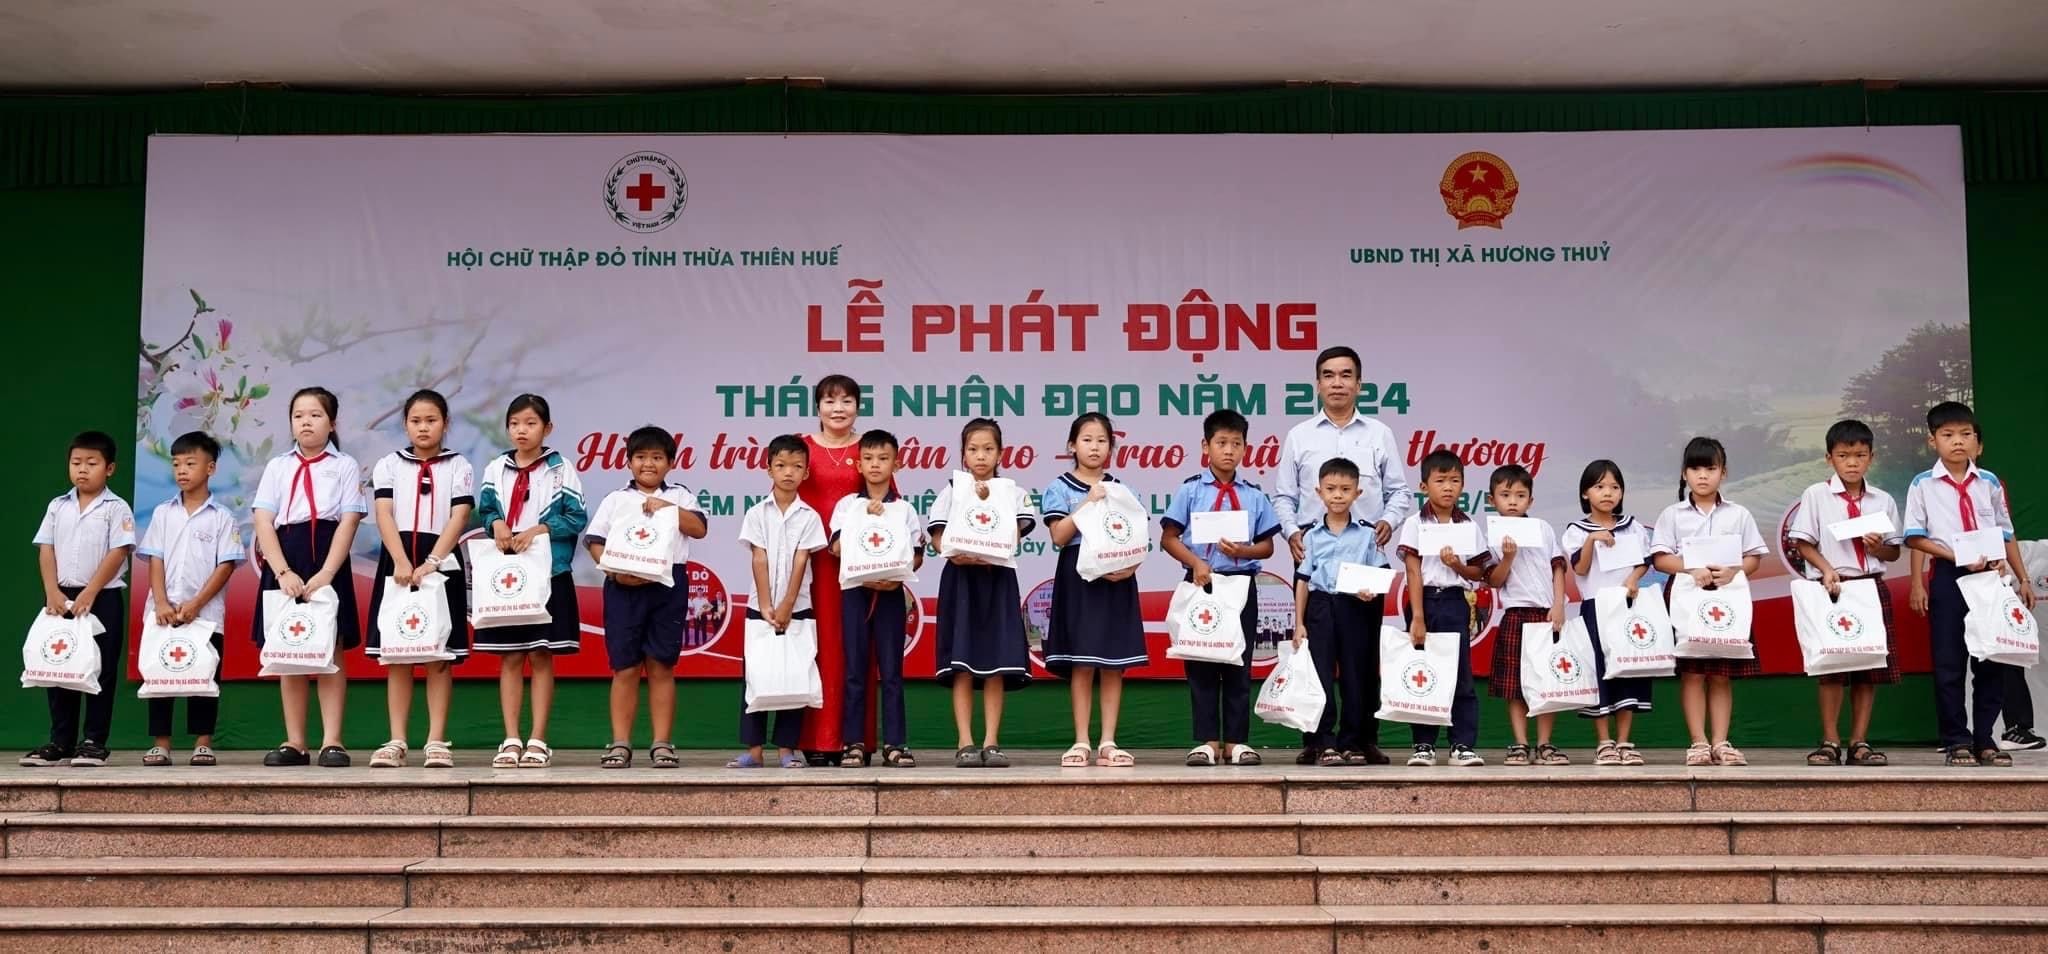 Thừa Thiên - Huế: Tháng Nhân đạo phấn đấu đạt giá trị 6 tỷ đồng, trợ giúp 1.600 lượt người